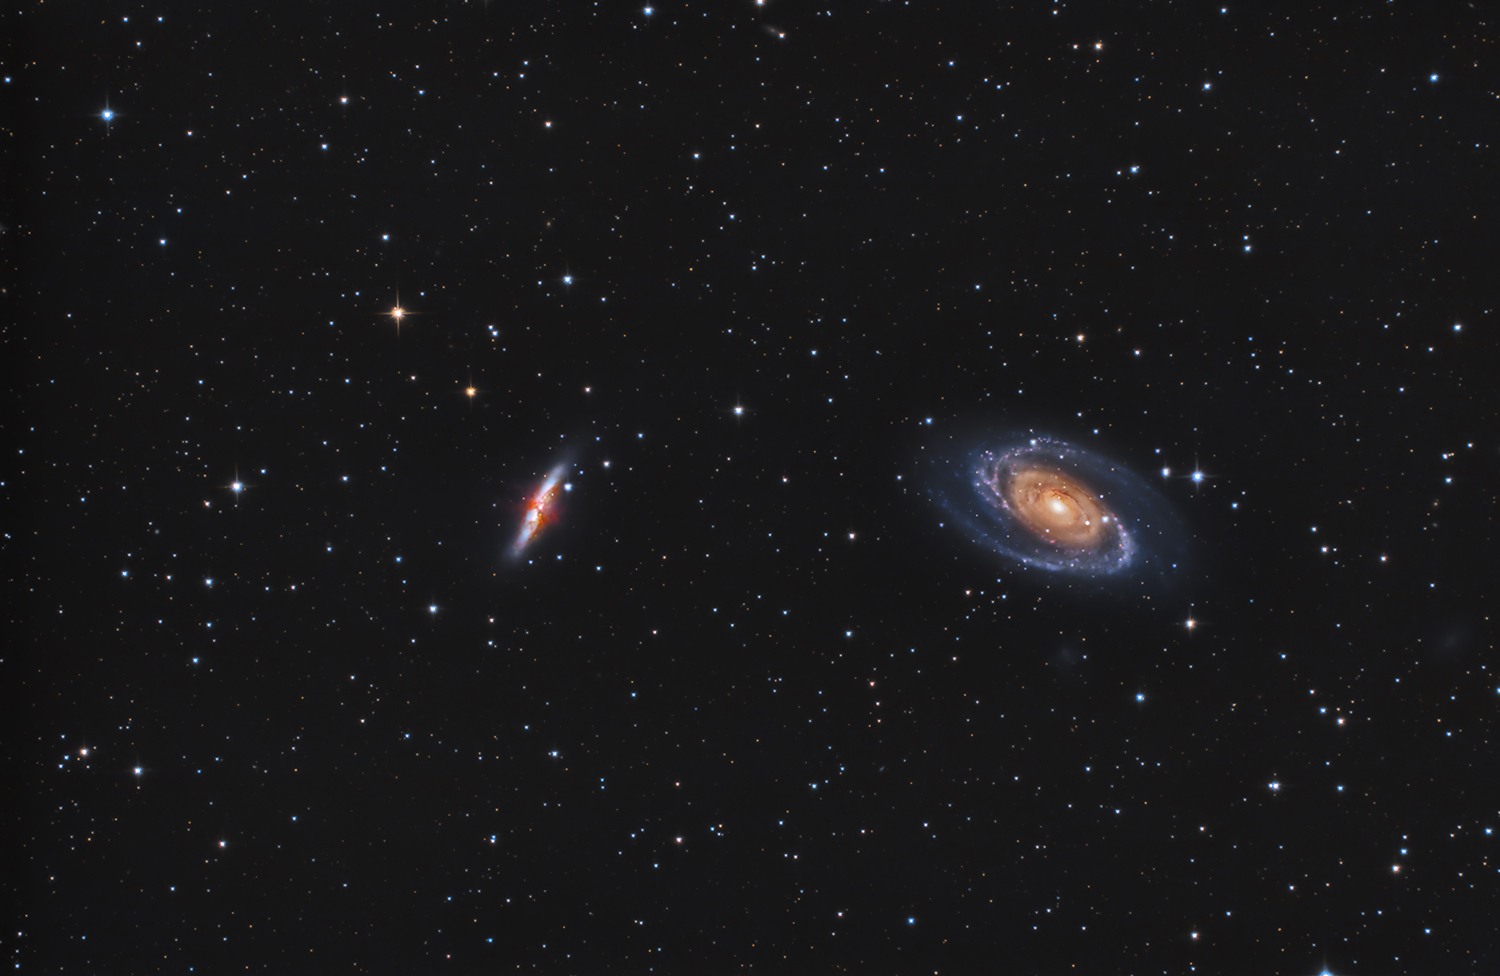 Un duo : M81 la galaxie de Bode et M82 la galaxie du Cigare